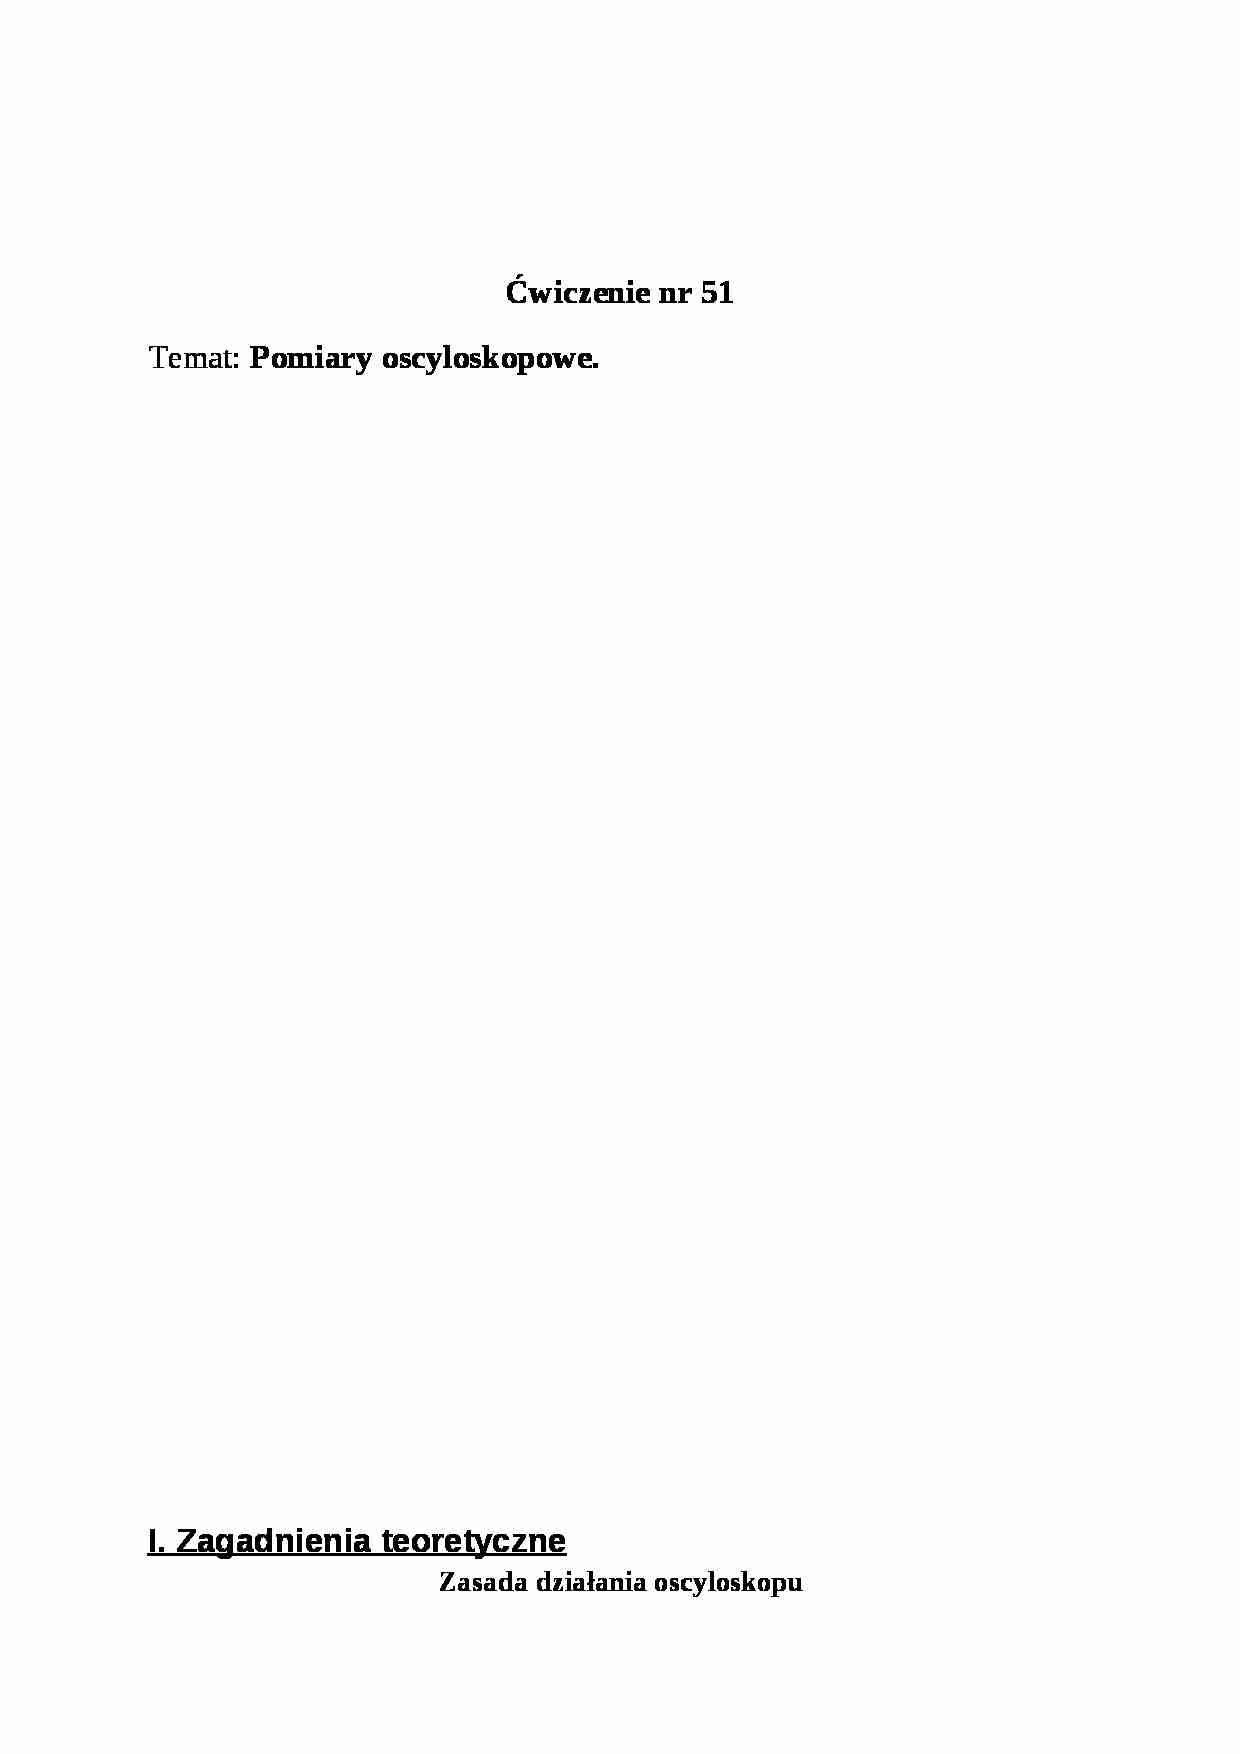 Pomiary oscyloskopowe-opracowanie - strona 1